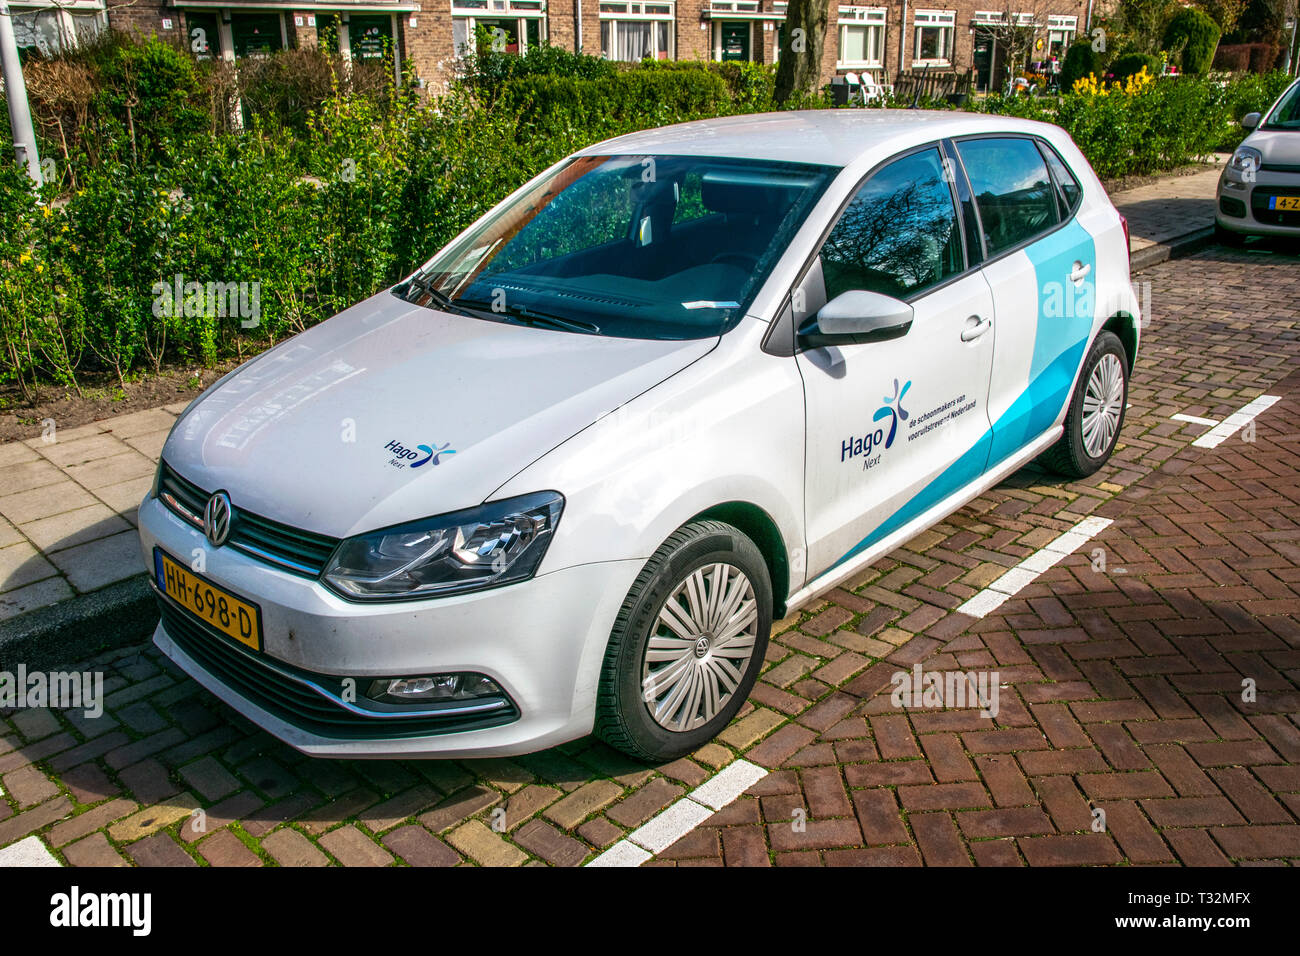 Hago auto aziendale a Amsterdam Th e Paesi Bassi 2019 Foto Stock